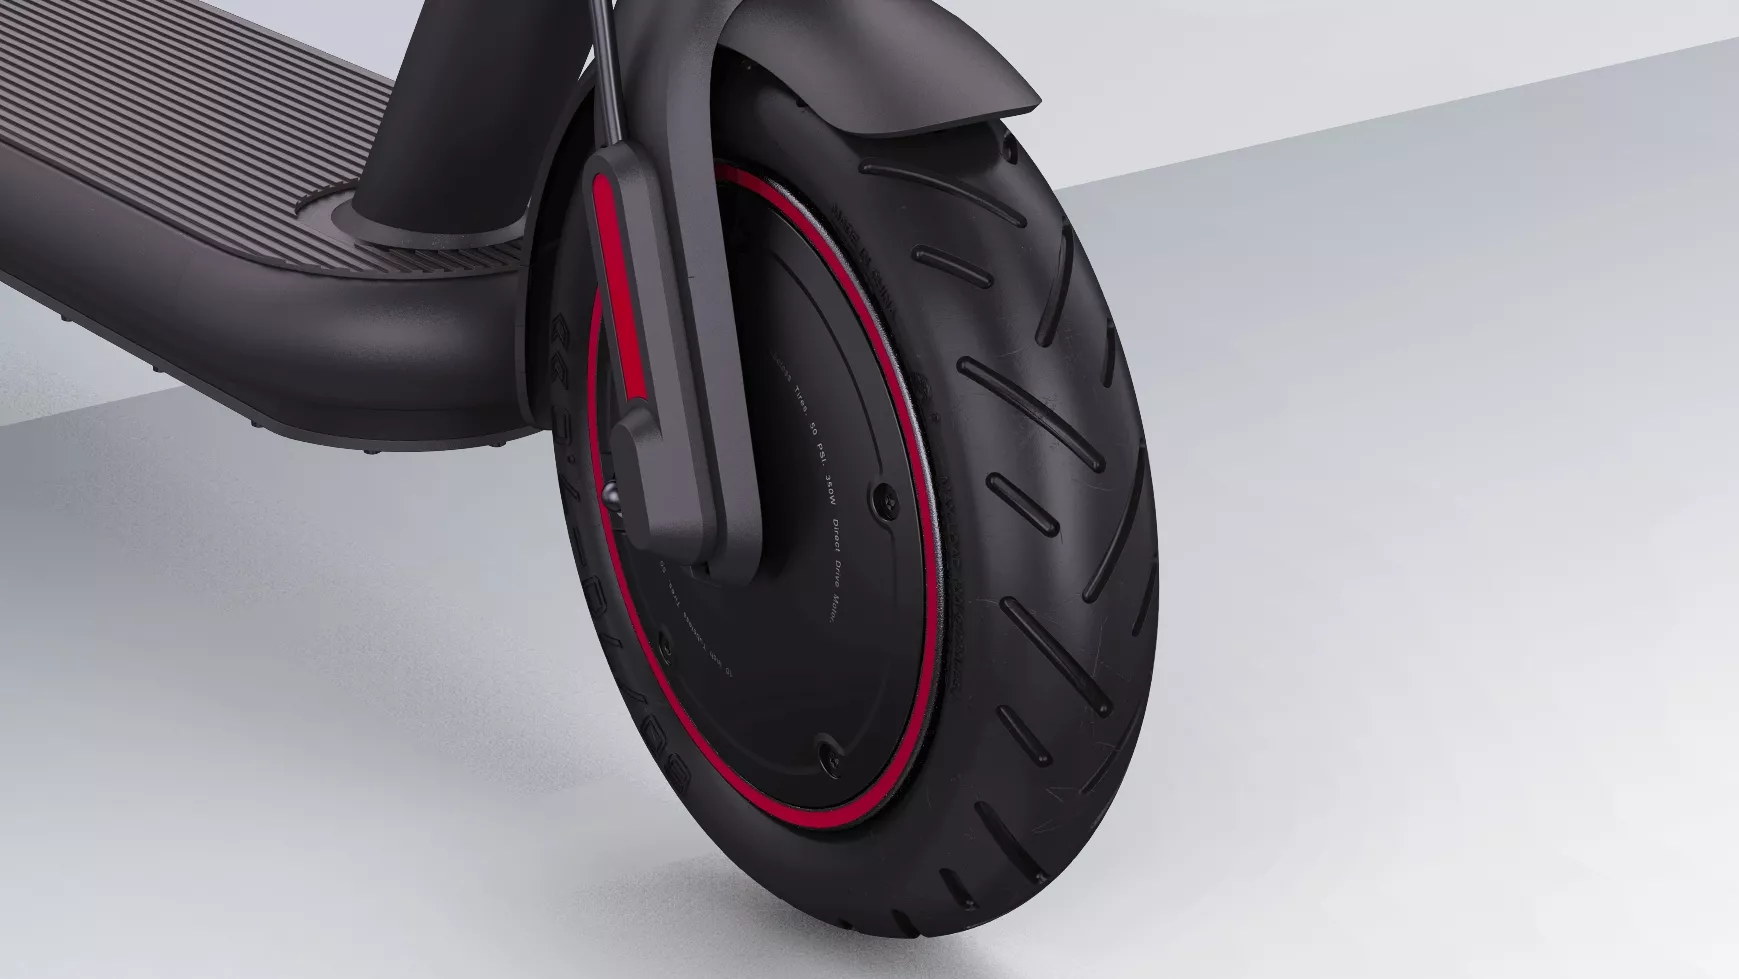 Las ruedas de este modelo Pro del patinete de Xiaomi vienen con tecnología antipinchazos tubeless, para no tener que preocuparse de inflarlos nunca más.